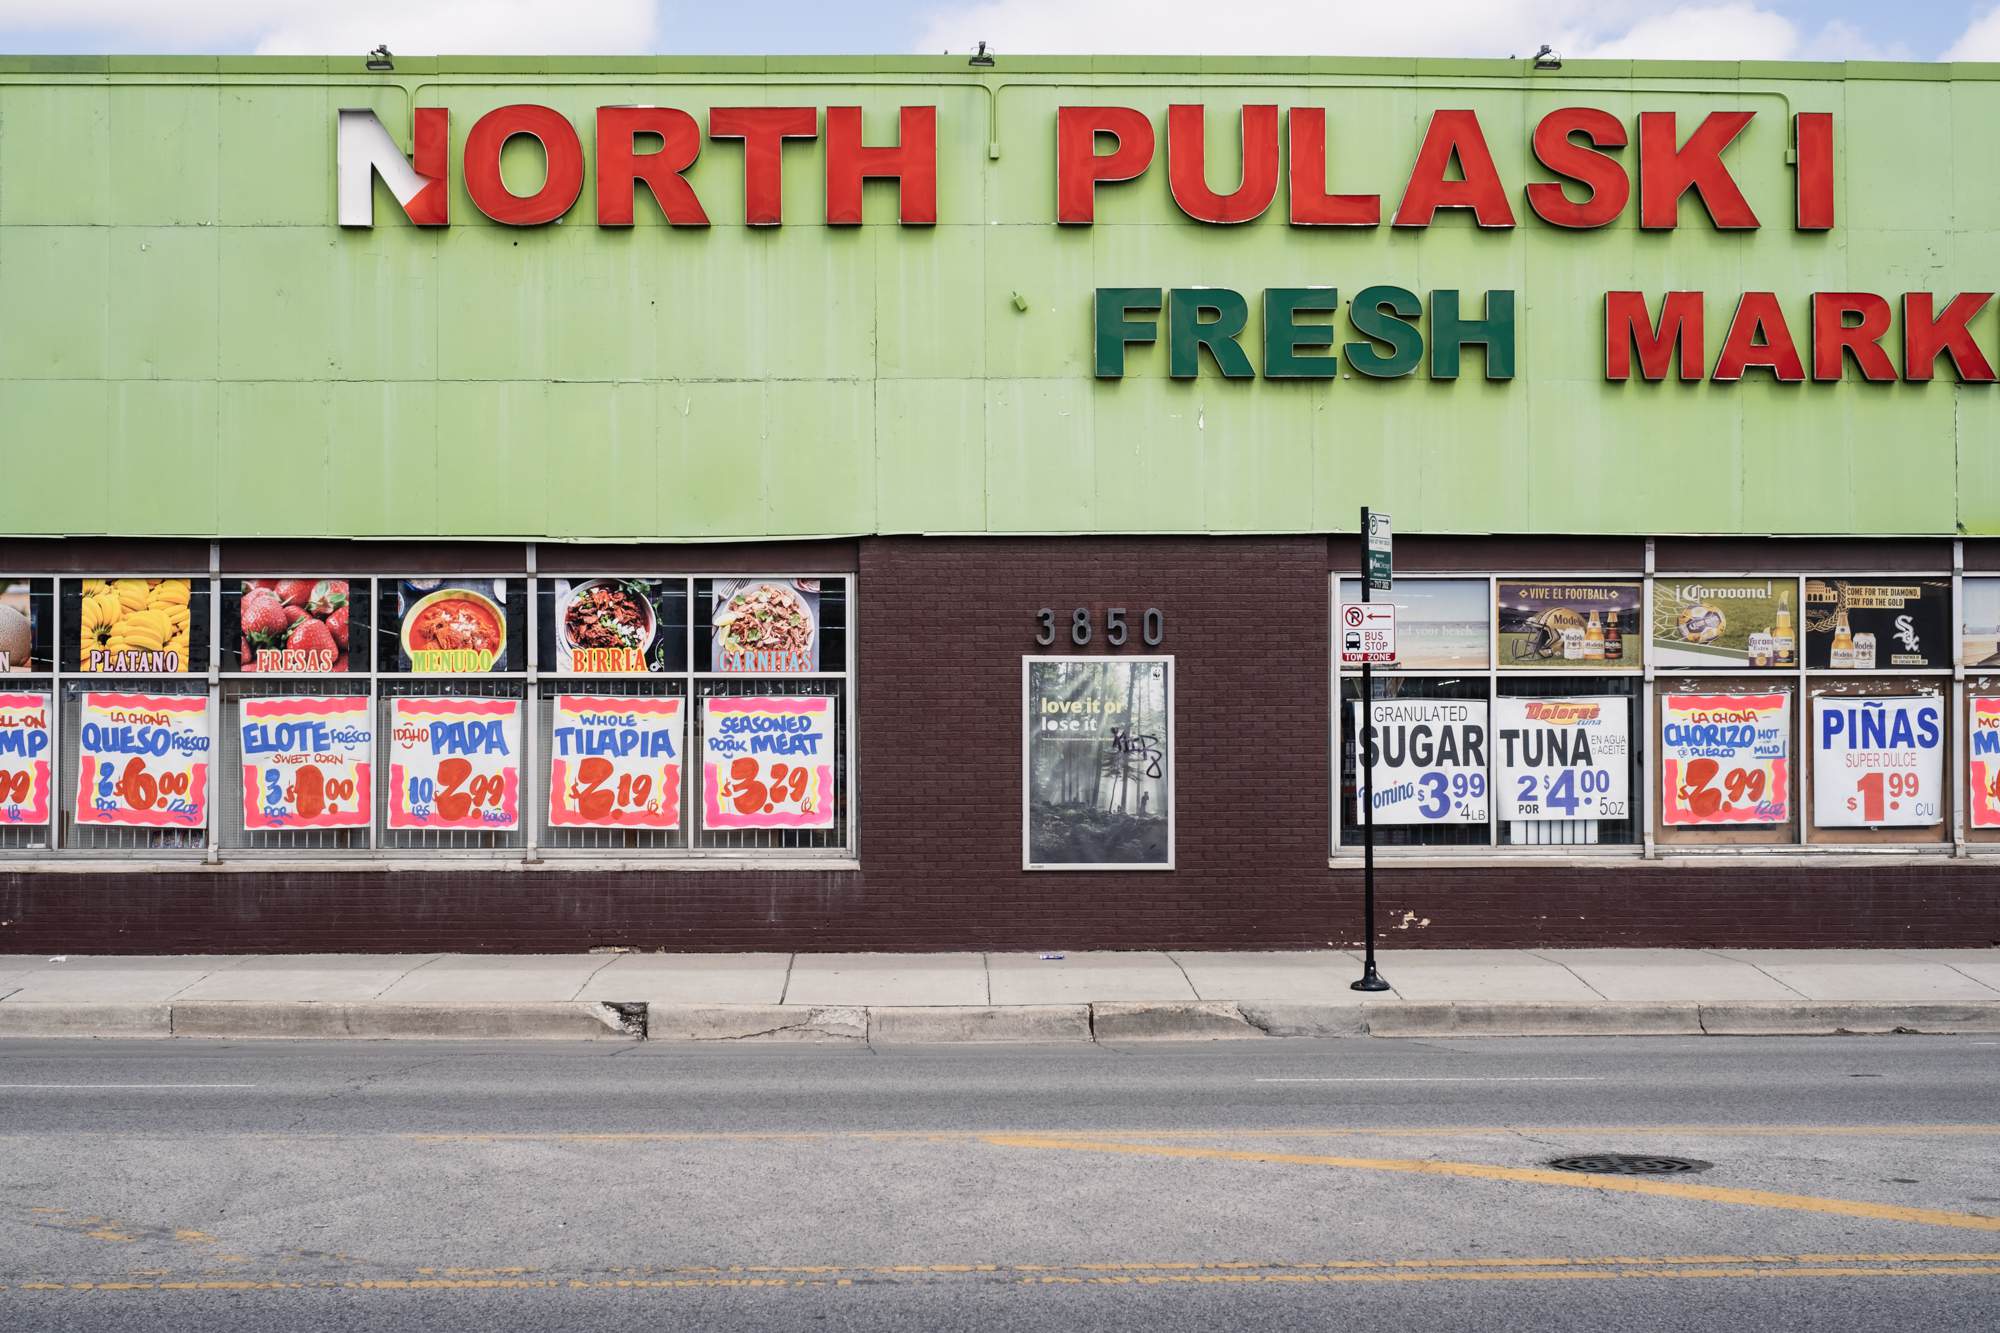 North Pulaski Fresh Market